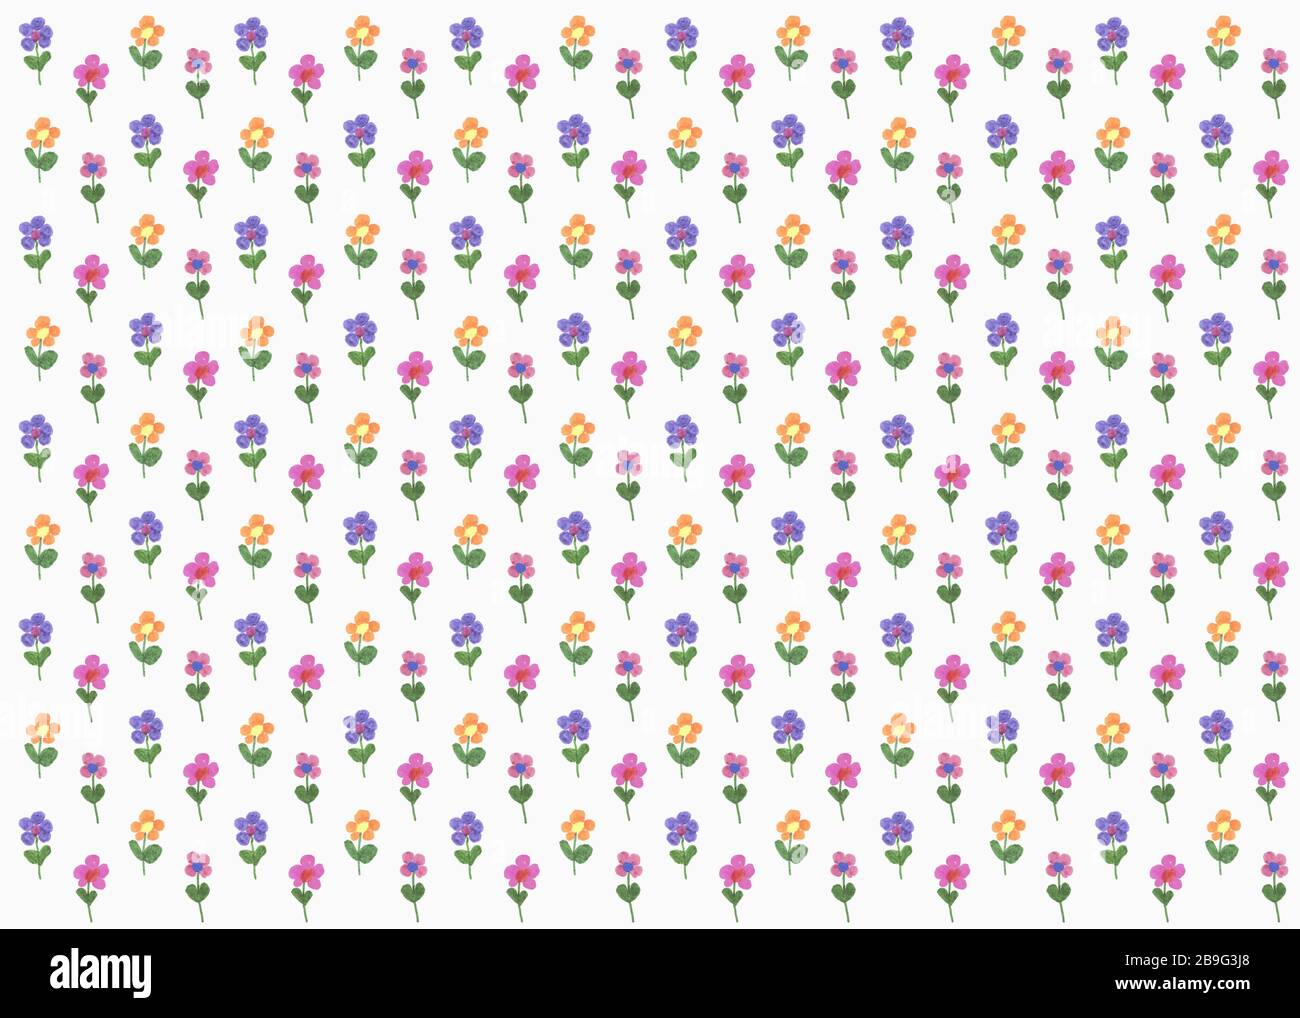 Illustration de fleurs multicolores sur fond blanc Banque D'Images